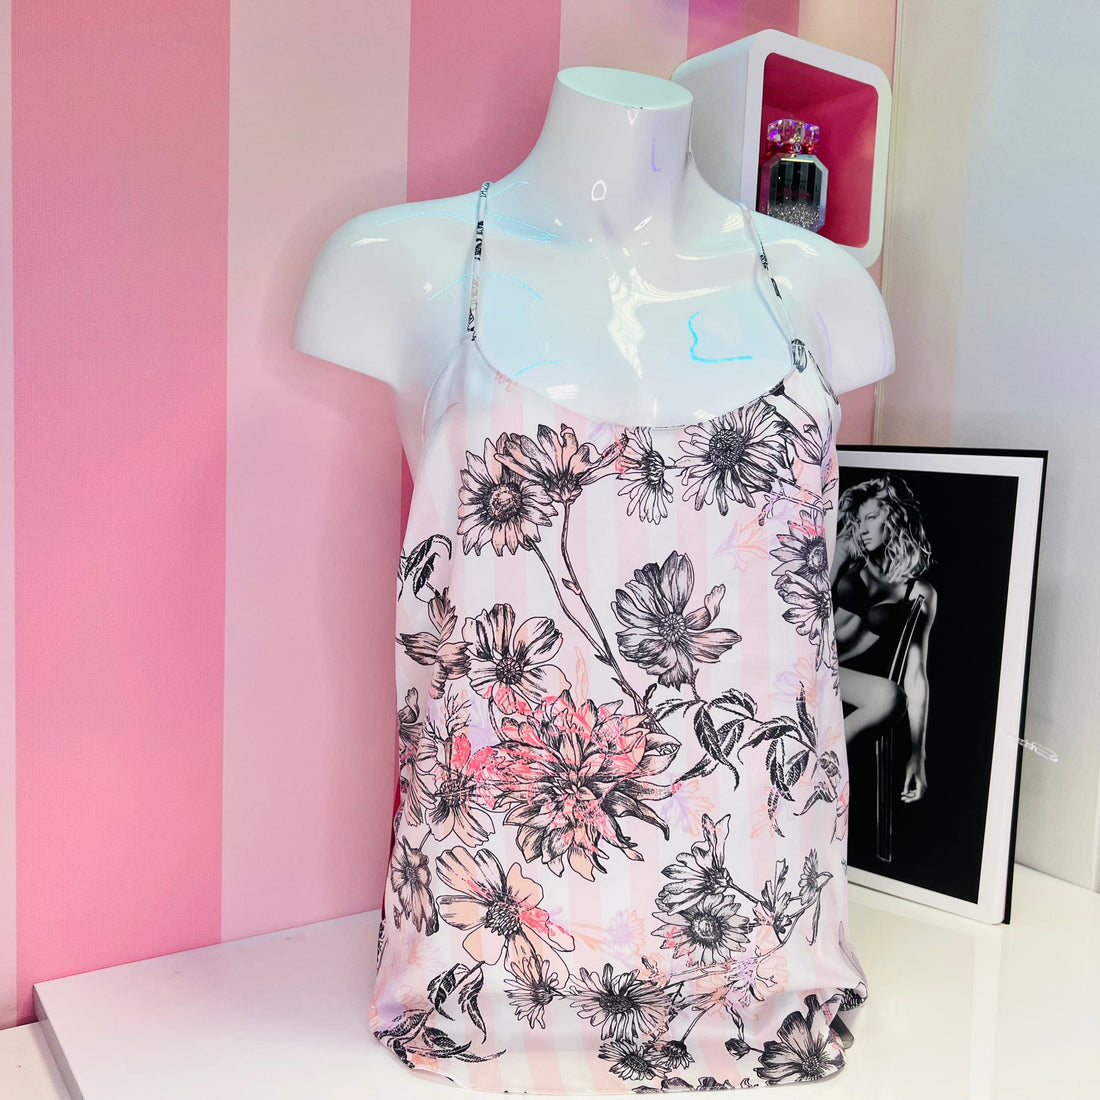 Košilka se vzory - Růžová / M / Nové štítky - Victoria’s Secret